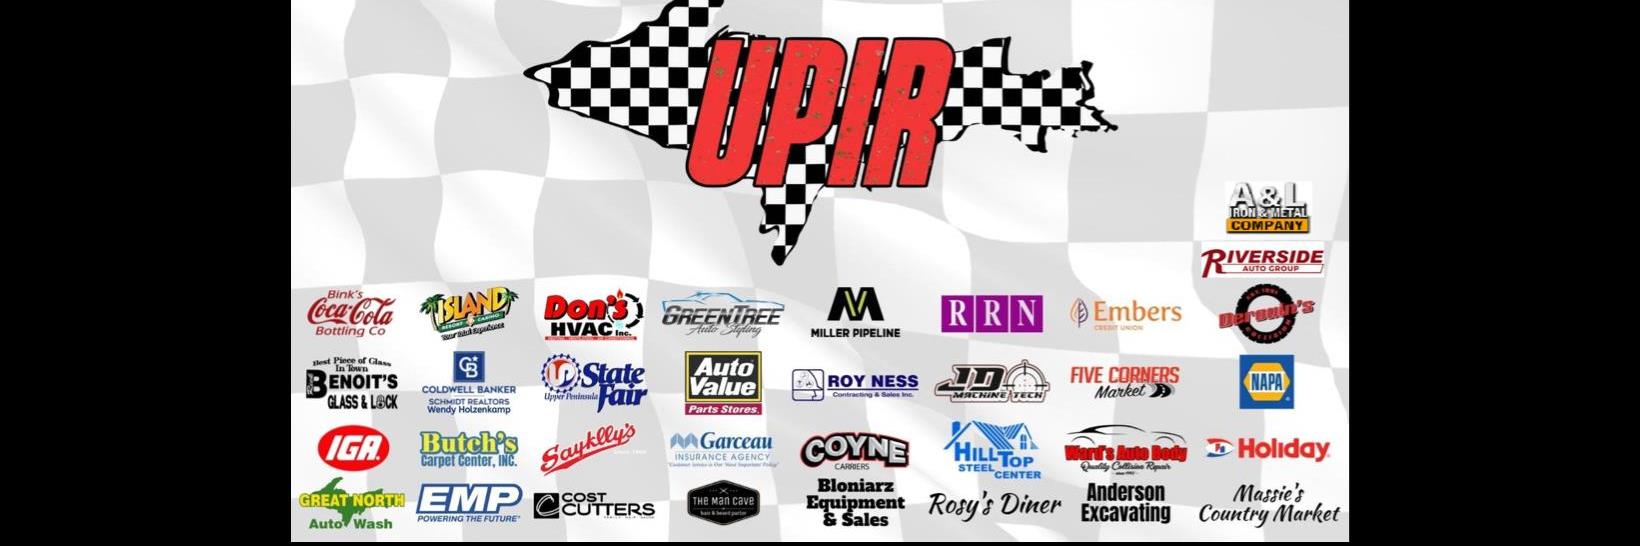 8/15/2022 - Upper Peninsula International Raceway